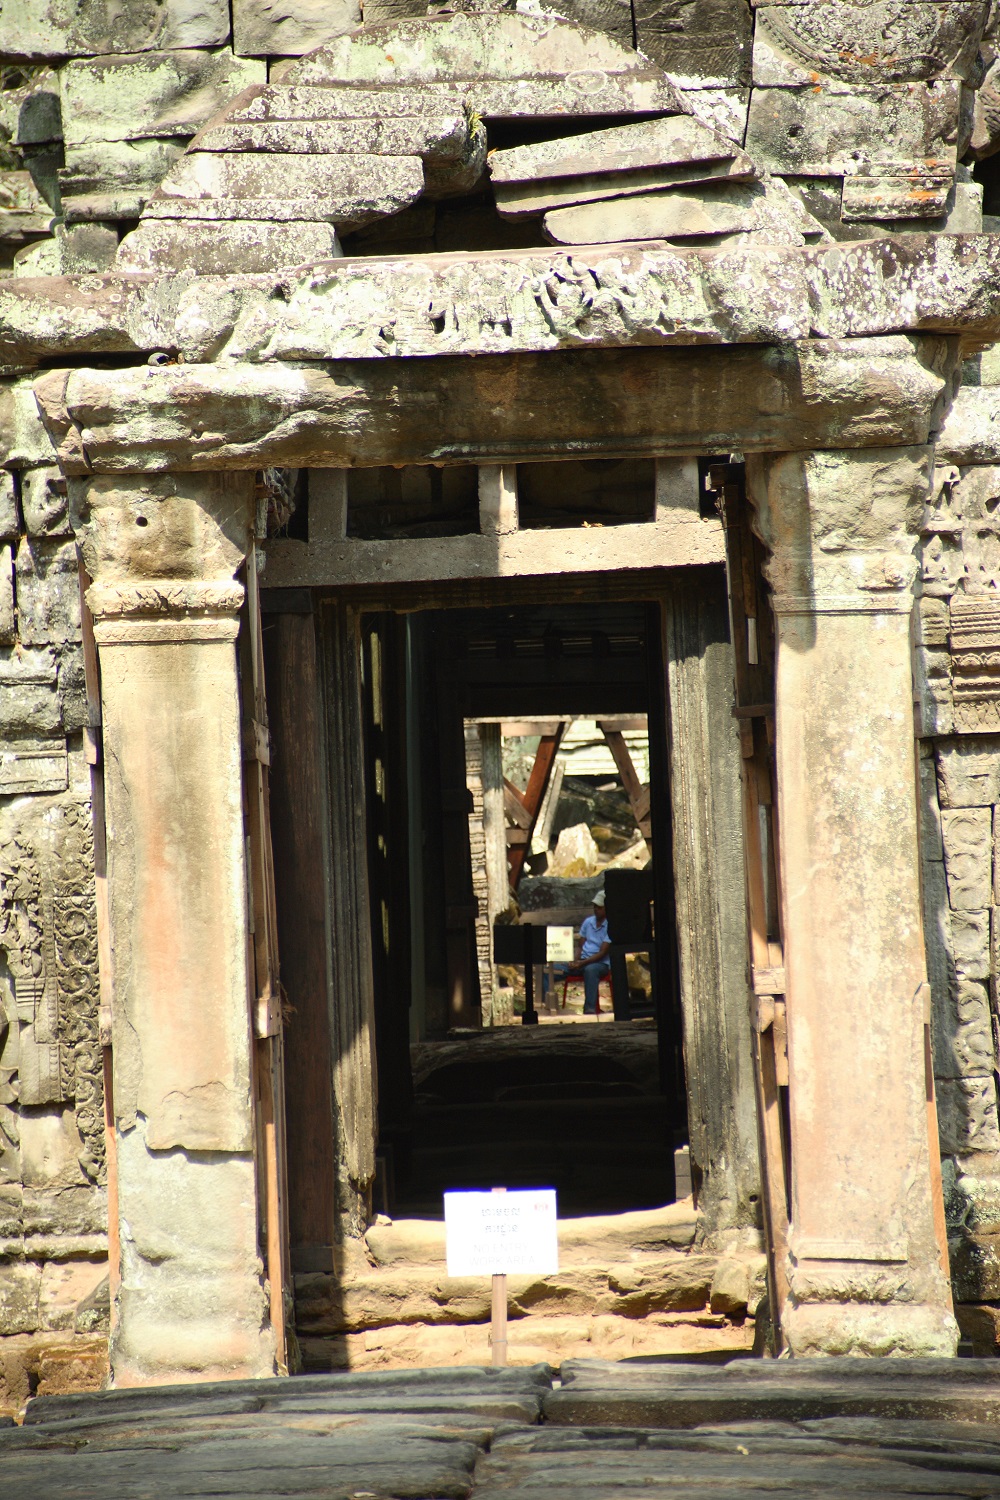   Приключения: Ангкор Ват — ужас и мистика древних. Храм древних богов кхмеров - фото 3